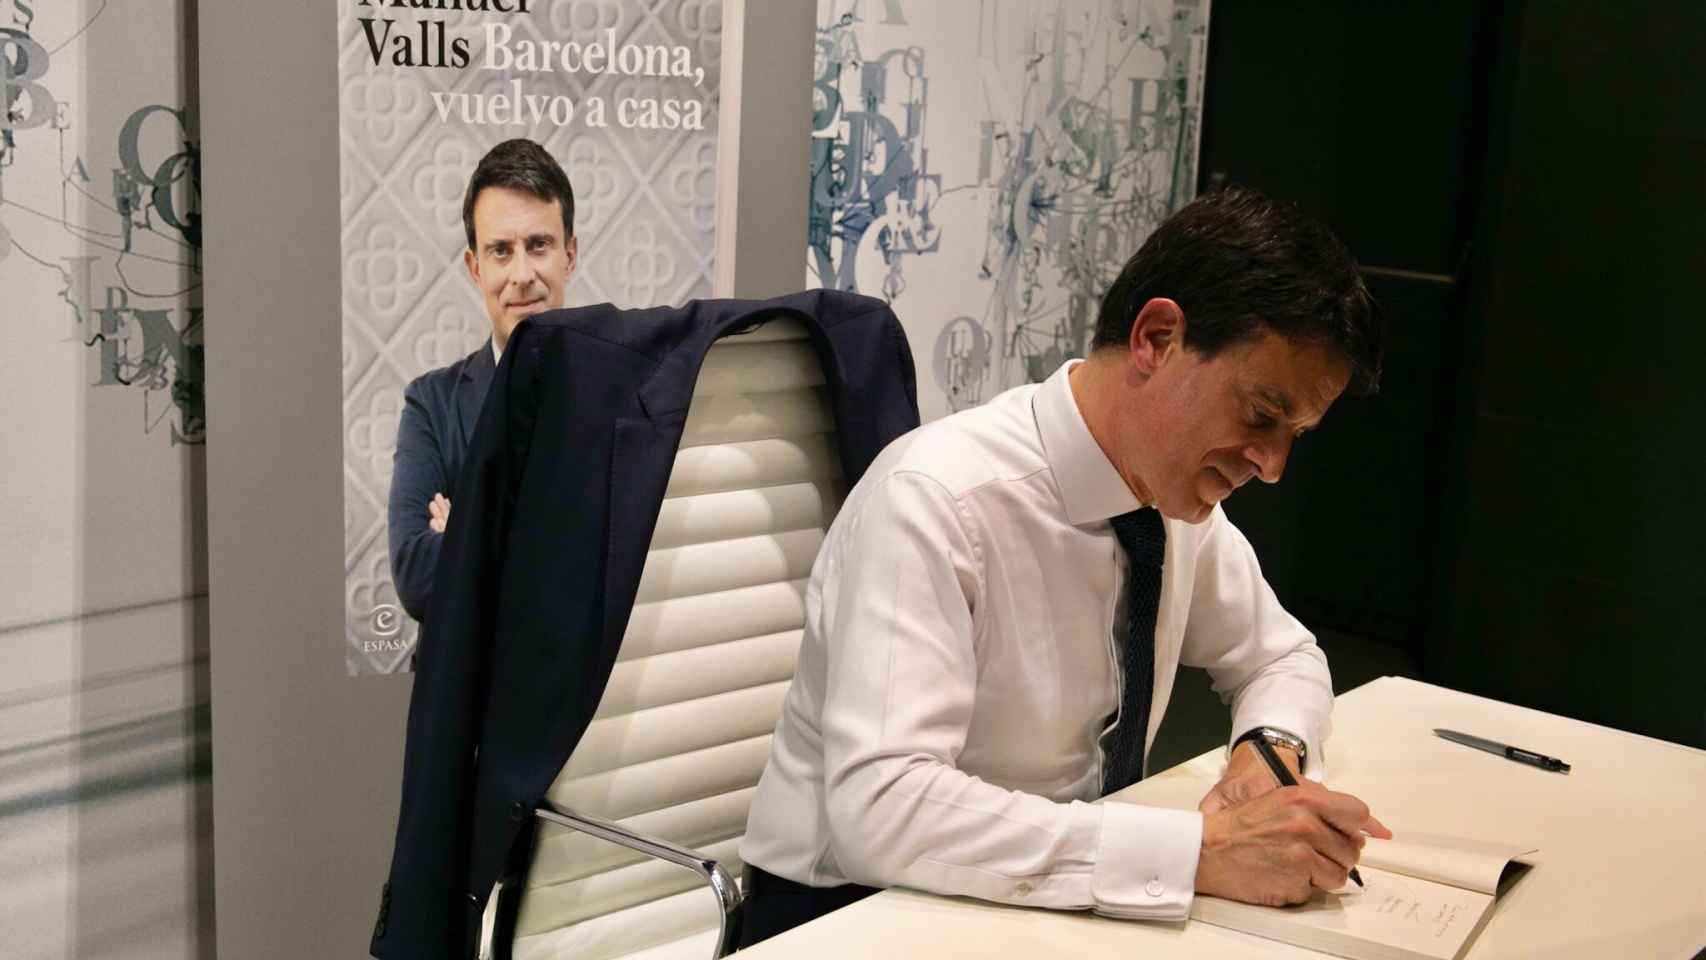 Valls firma un ejemplar de su libro. Si Inés Arrimadas fuera de izquierdas, la gente habría salido a la calle para criticar a los racistas que la invitaron a irse de Cataluña.